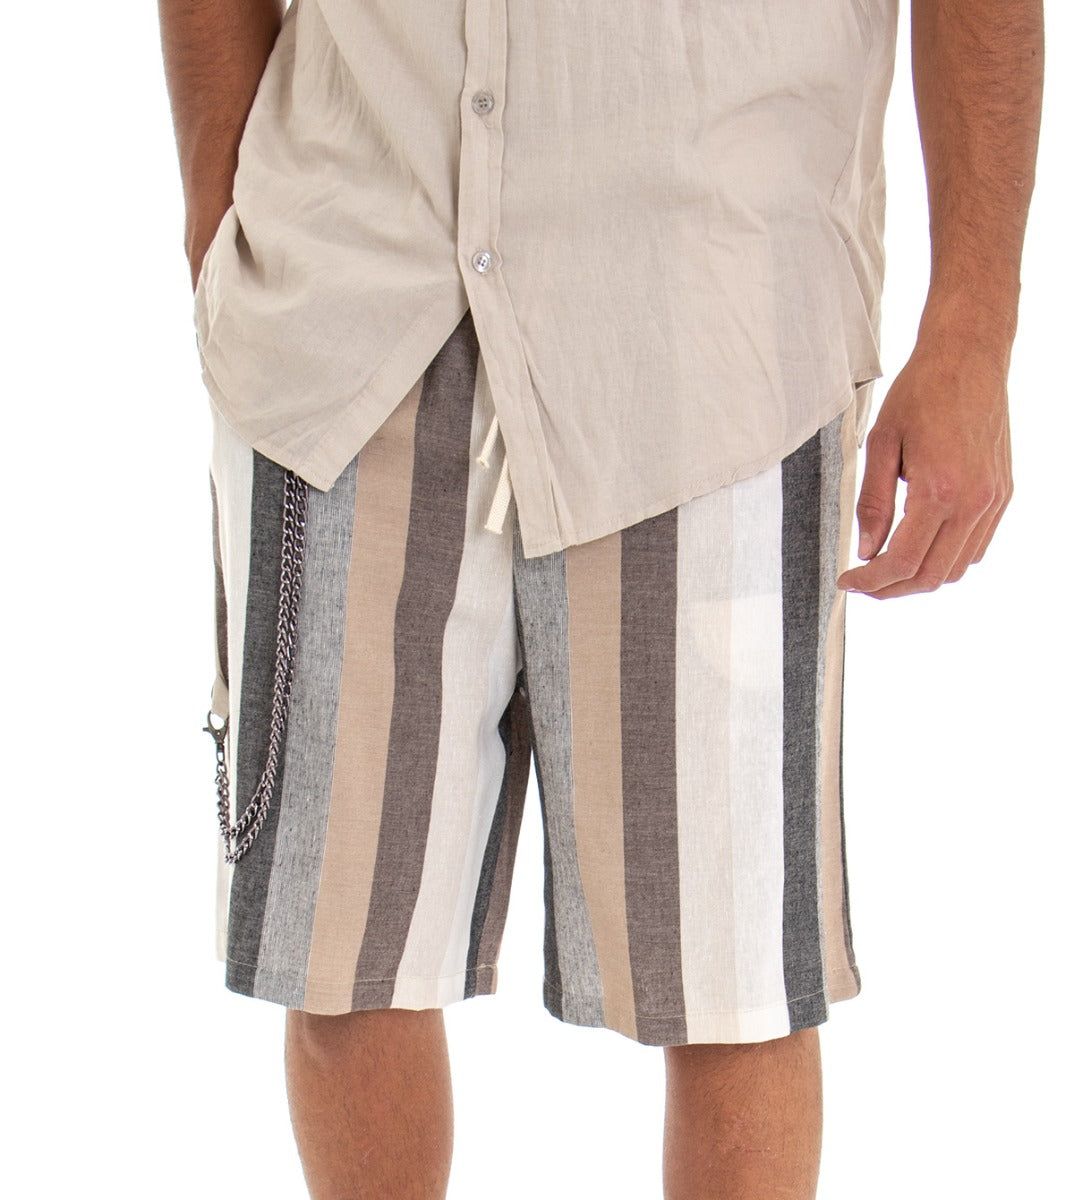 Bermuda Pantaloncino Uomo Shorts Lino Righe Rigato Elastico GIOSAL-PC1519A